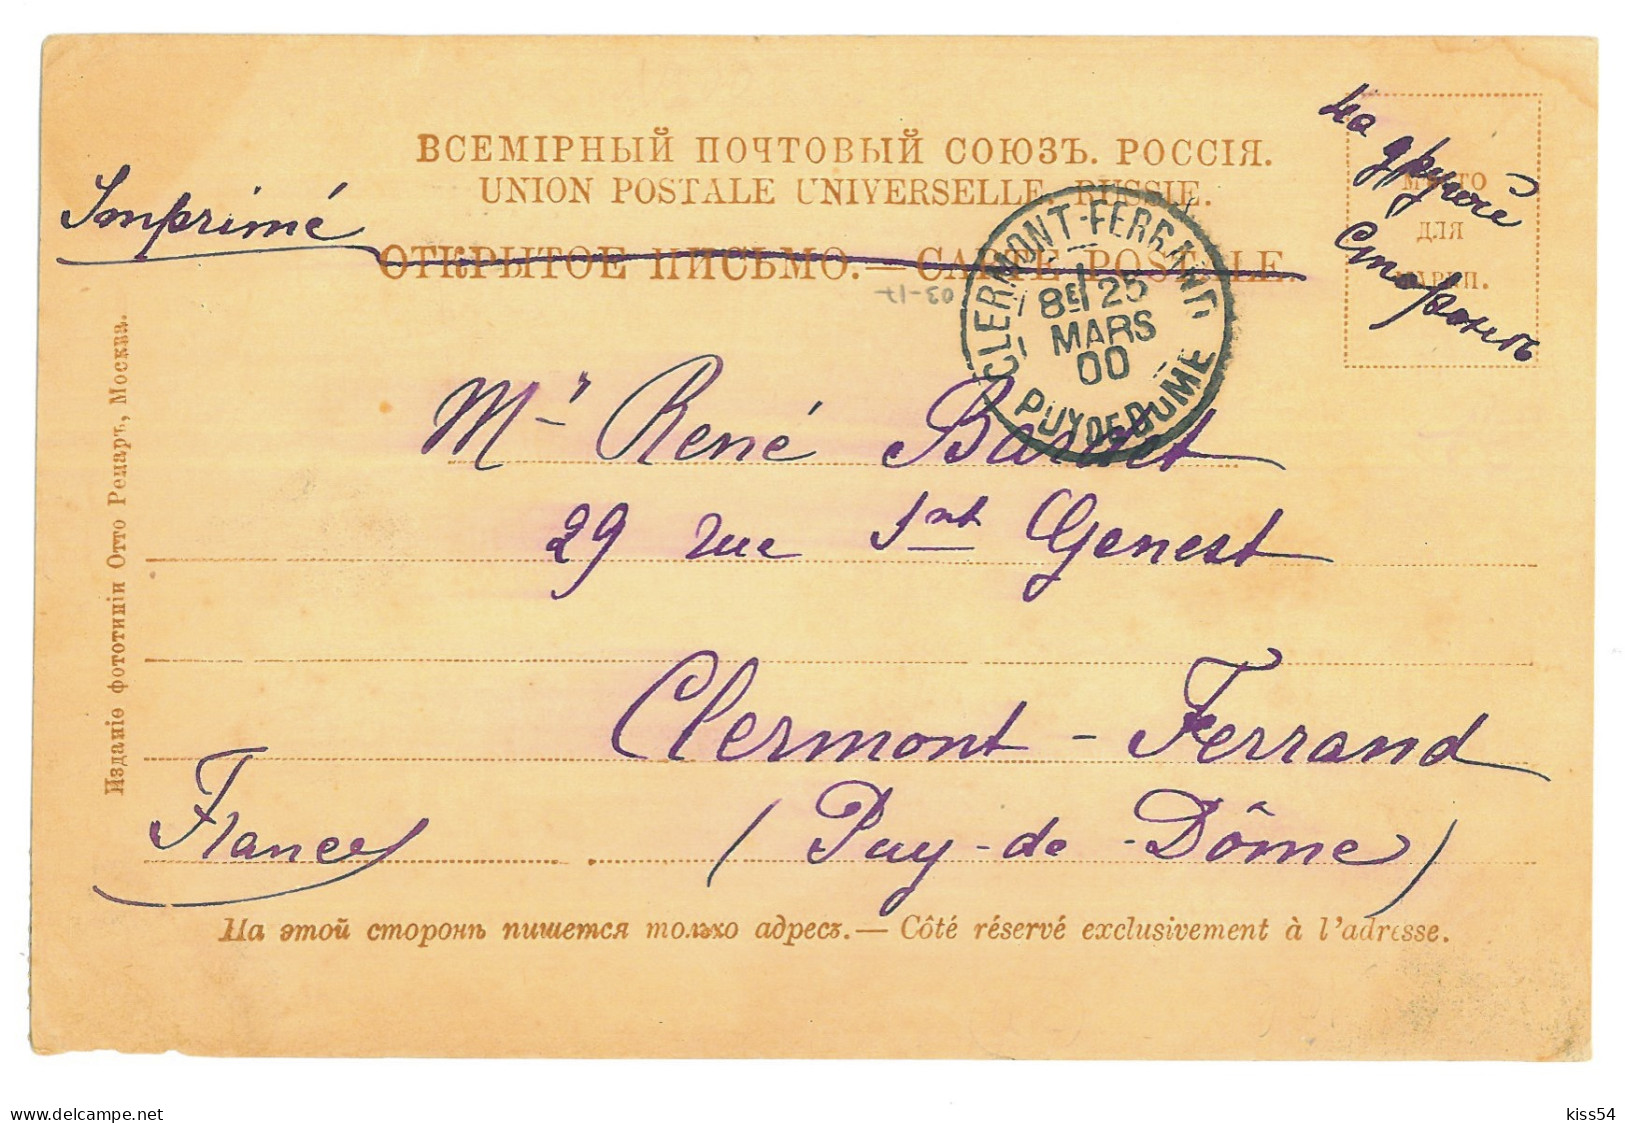 UK 23 - 22620 ODESSA, Post Office, Ukraine - Old Postcard - Used - 1900 TCV - Ukraine